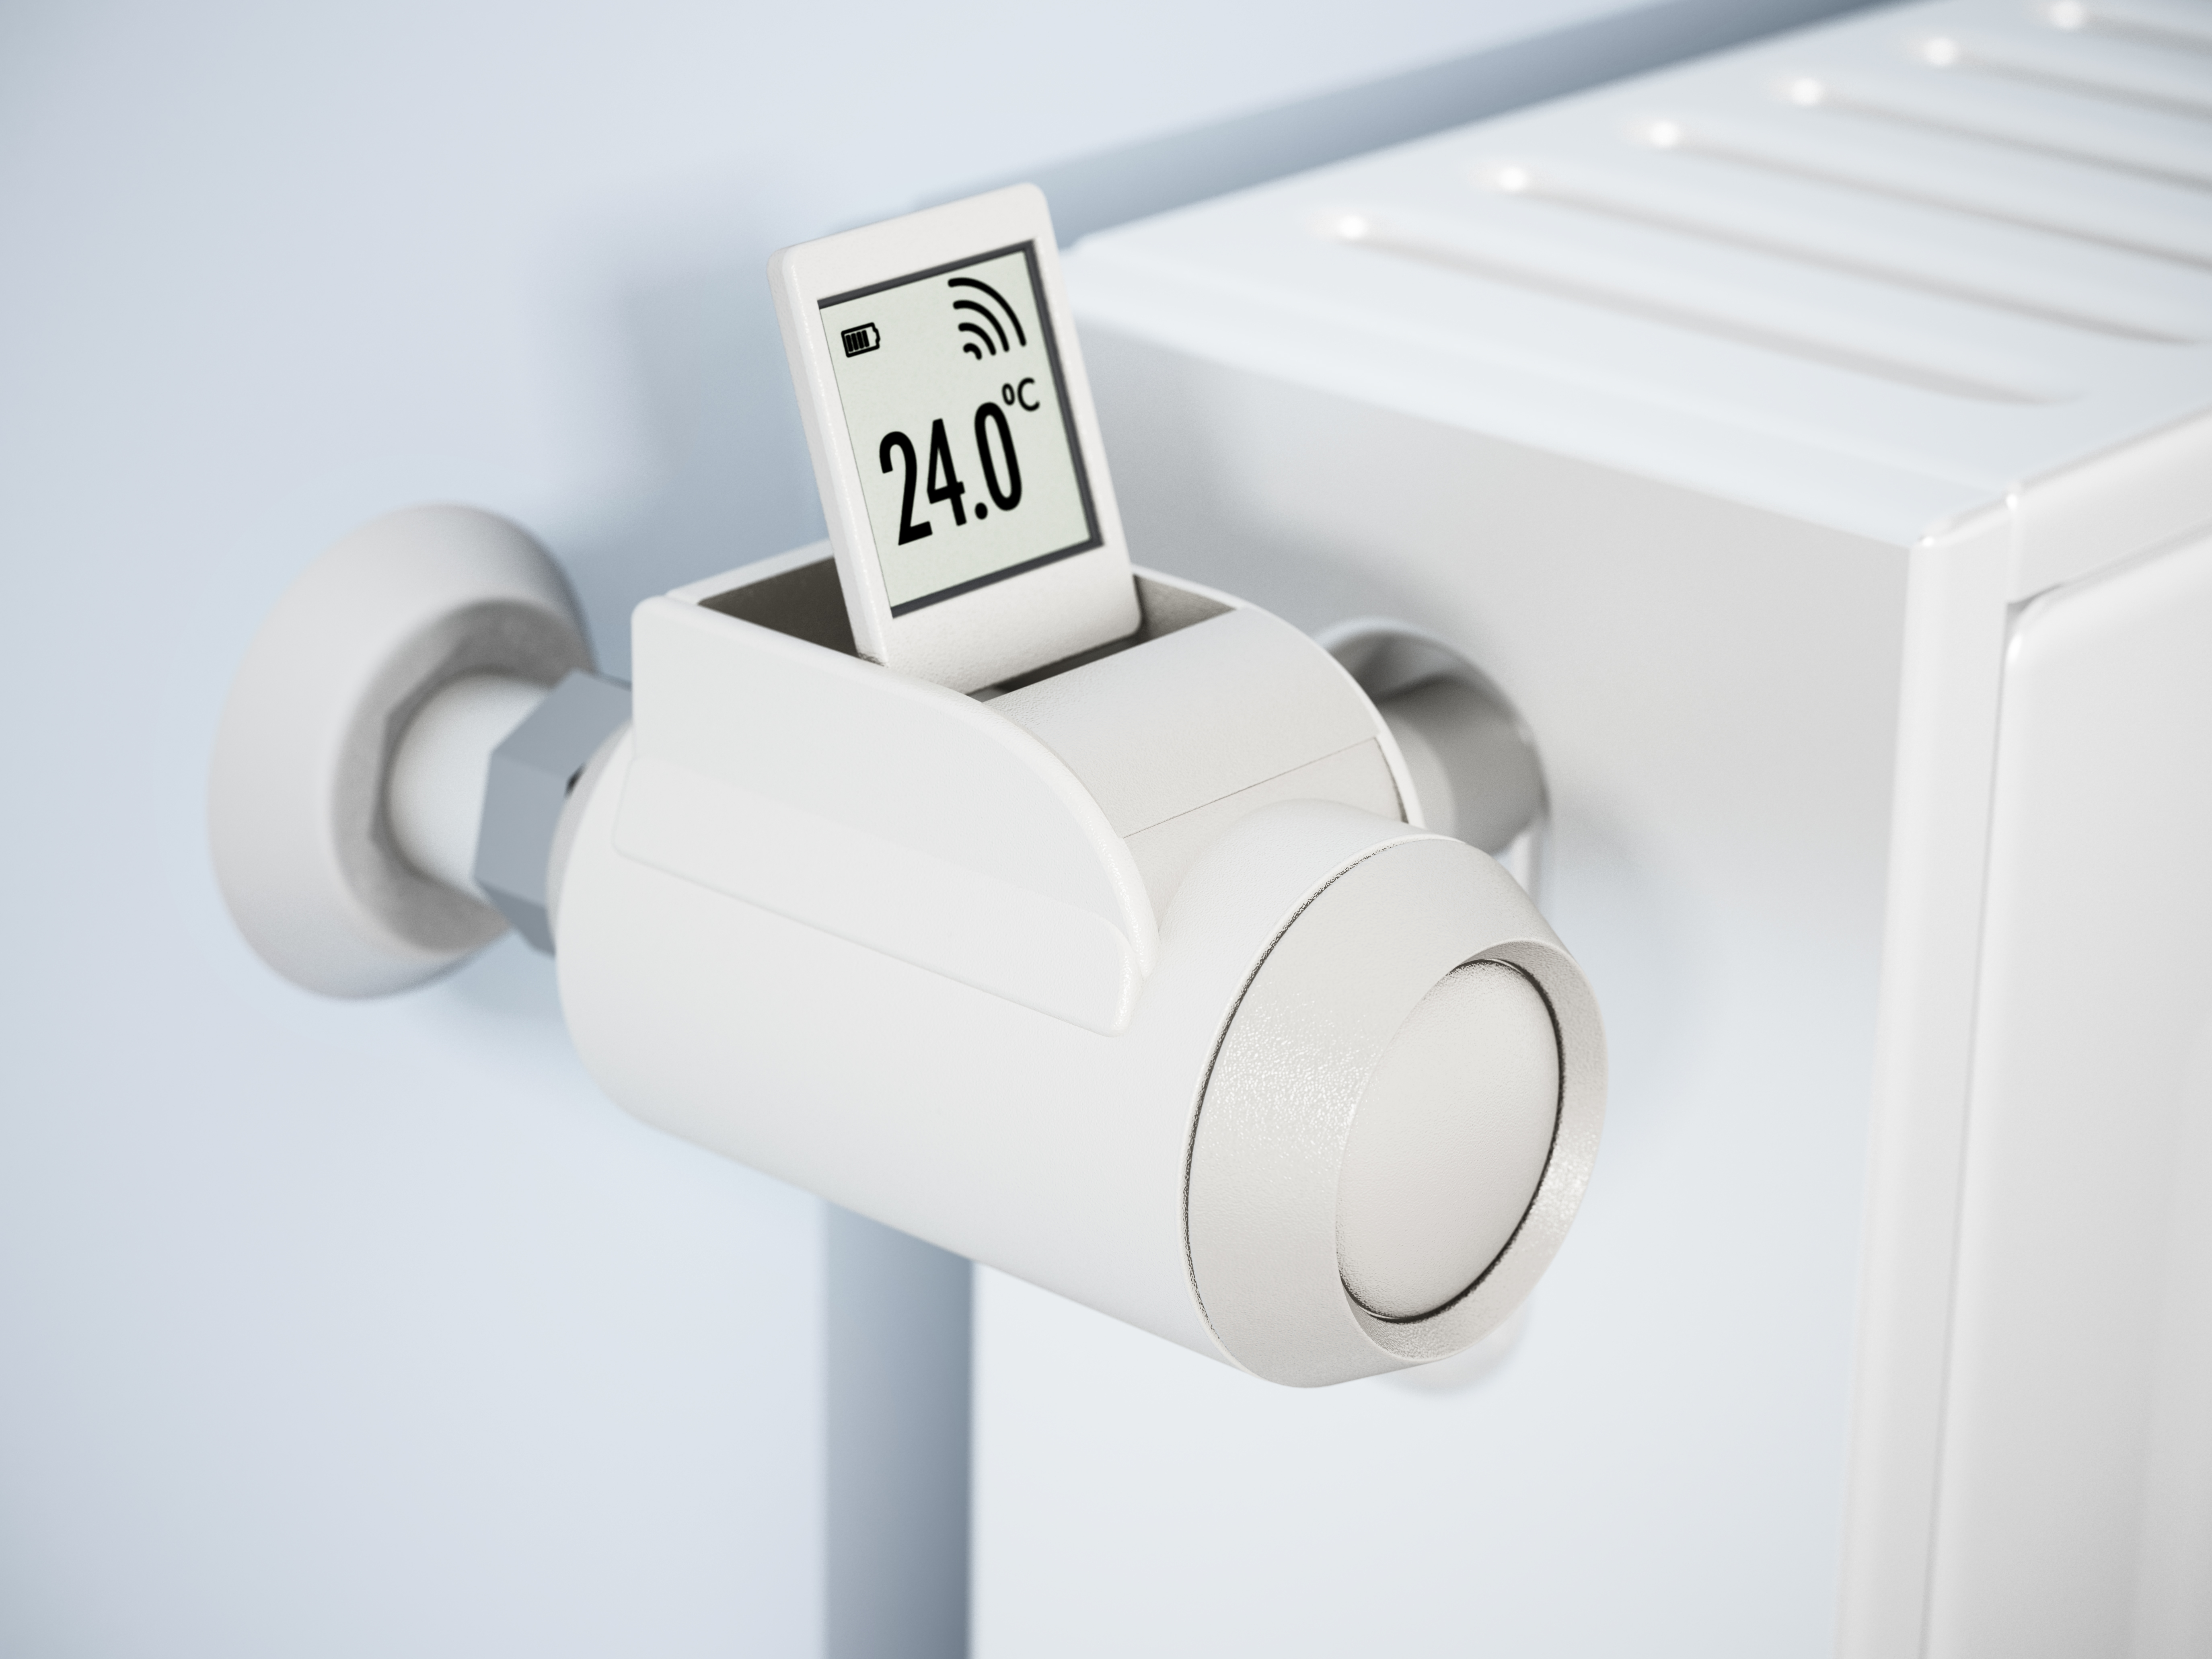 Valvole termostatiche: come regolarle per risparmiare sulla bolletta